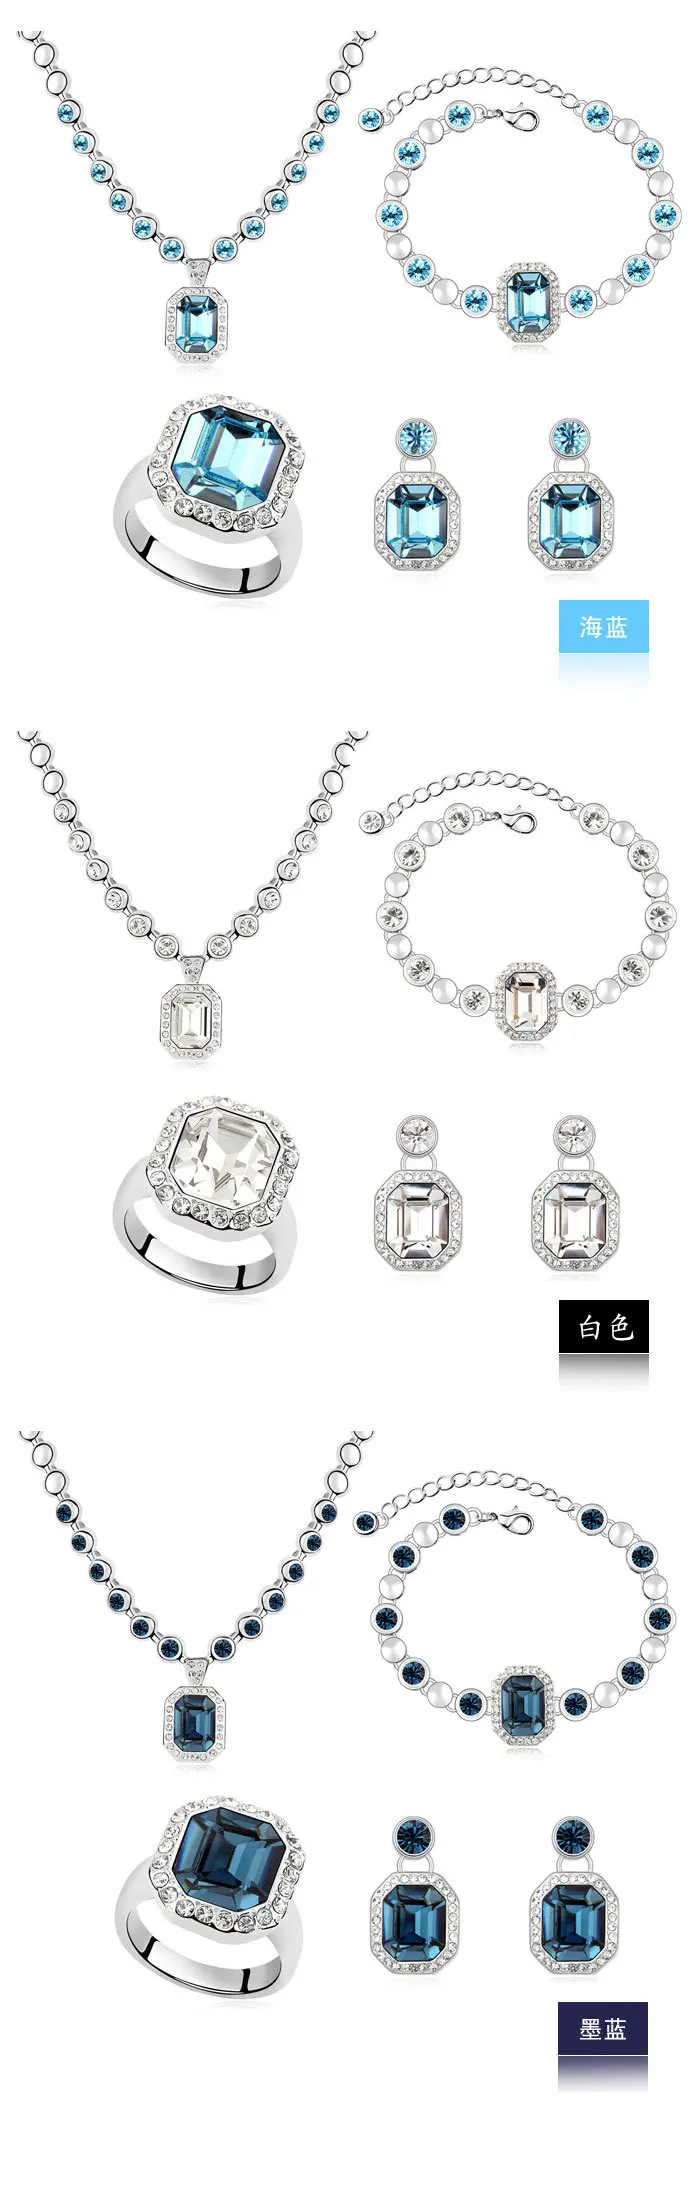 Винтажное ожерелье в виде карты штата Монтана серьги браслет кольцо Африканский Макси Ювелирные наборы кристаллы от SWAROVSKI для женщин массивные ювелирные изделия